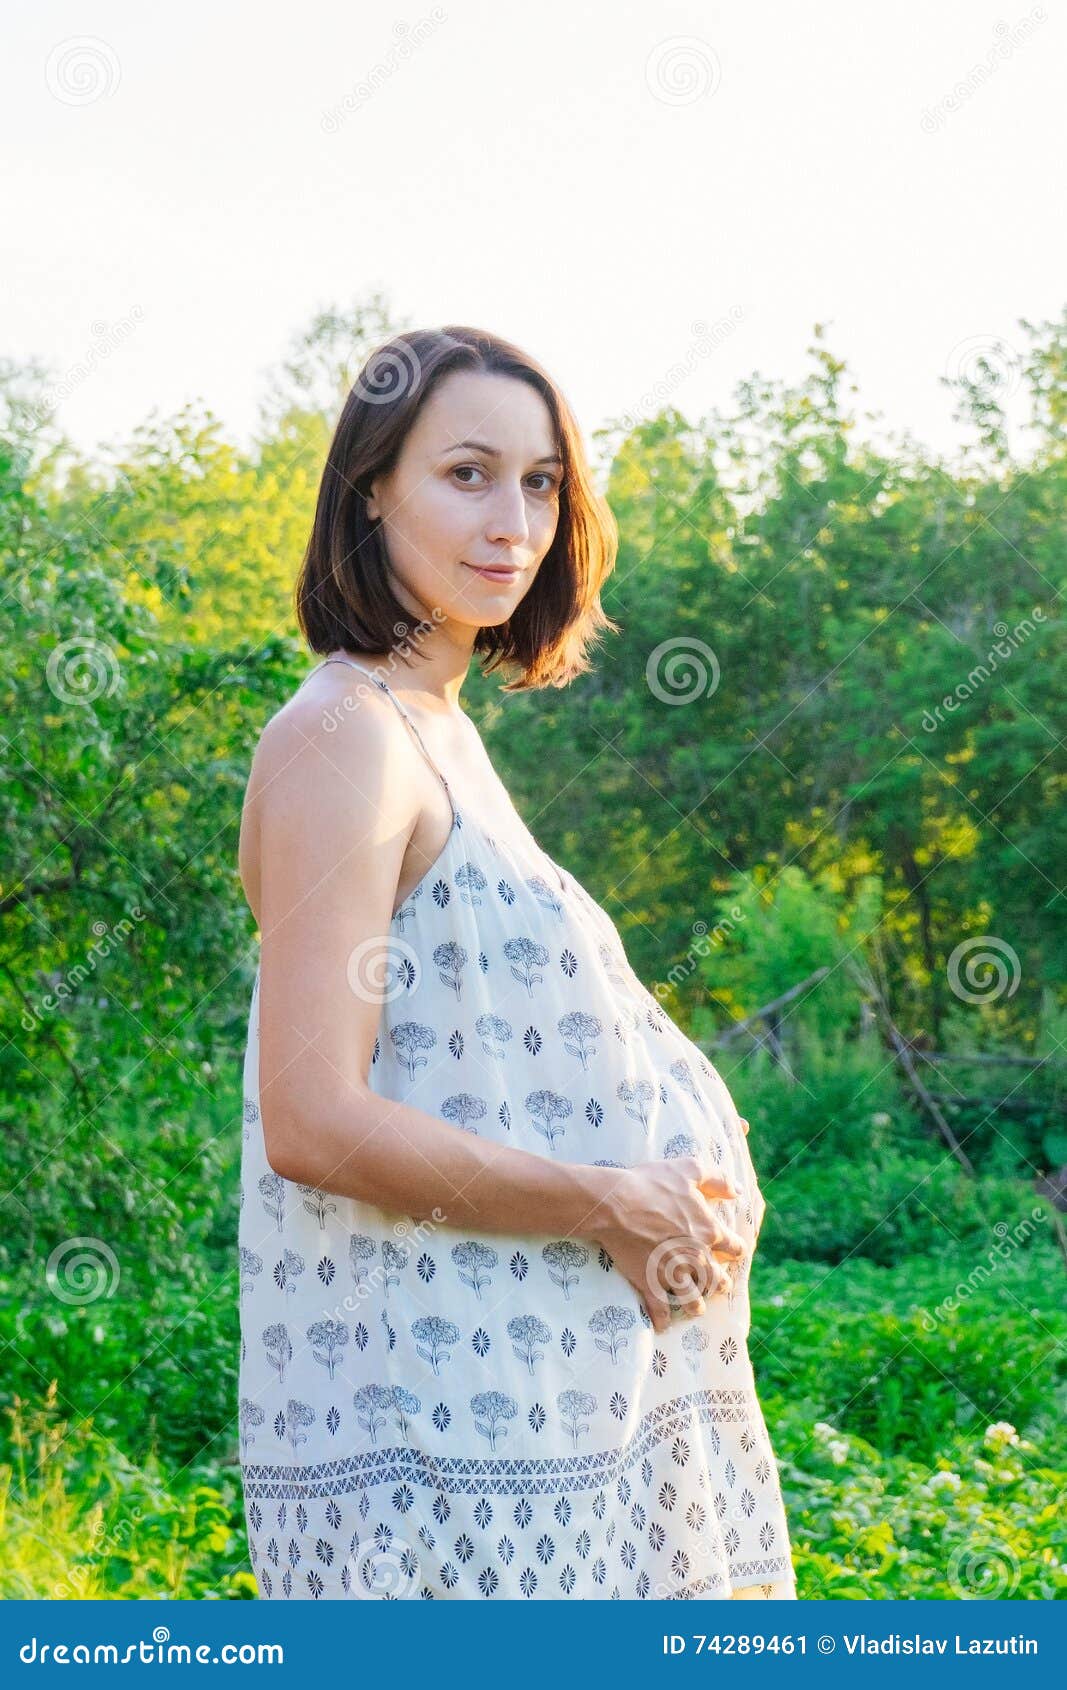 sundress for pregnant